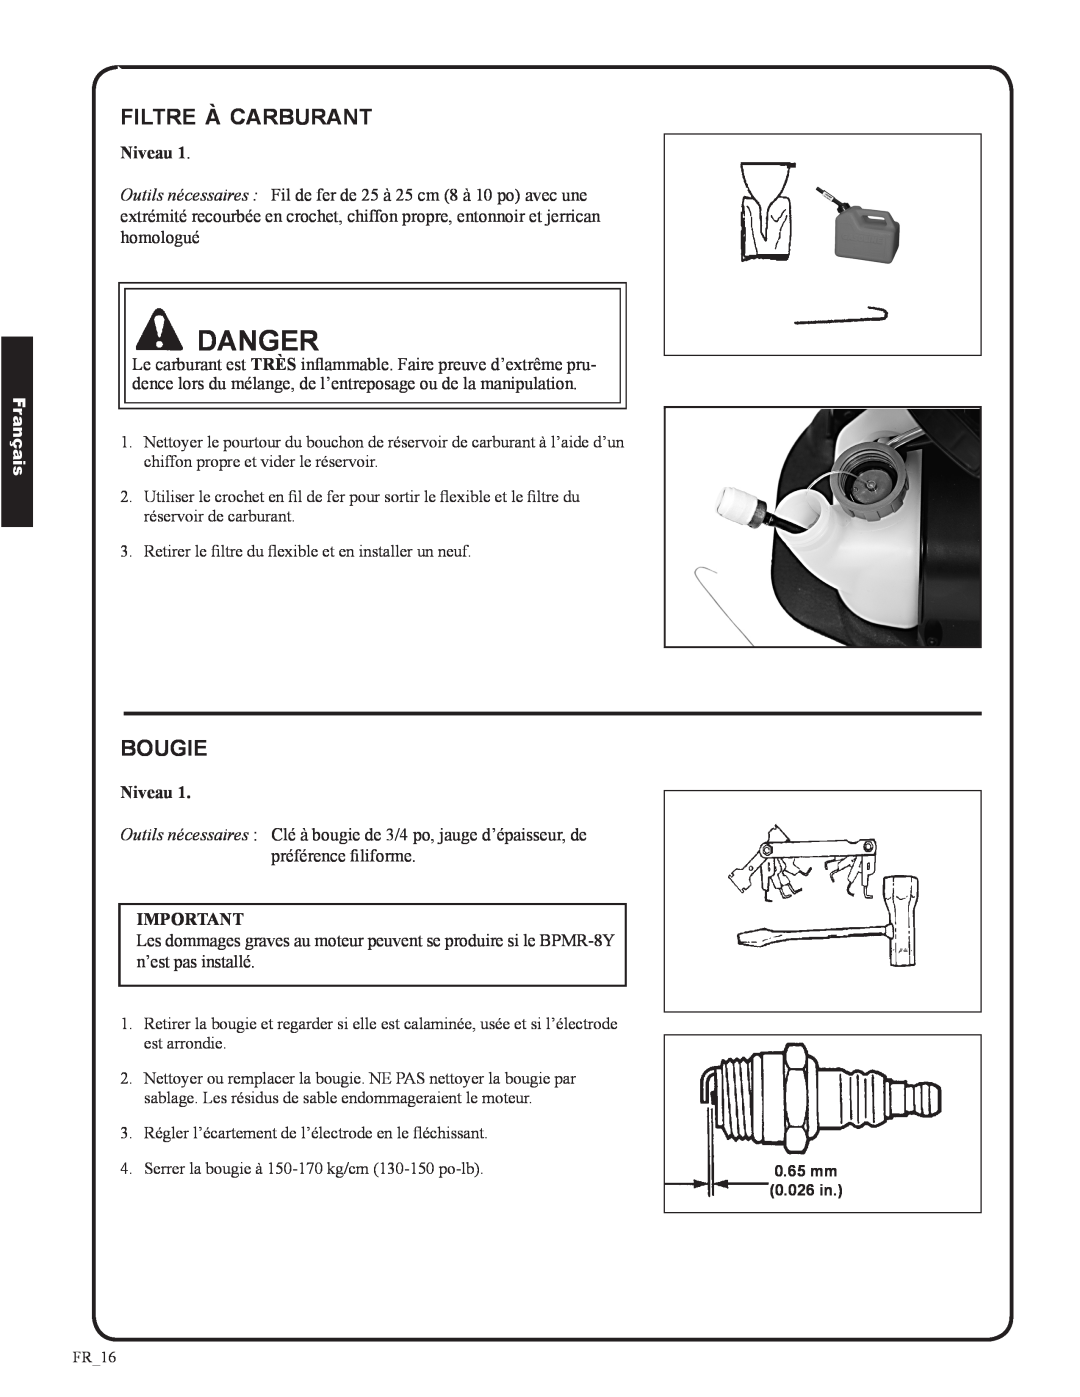 Shindaiwa EB633RT, 82050 manual Danger, filtre à carburant, bougie, Français, Niveau 